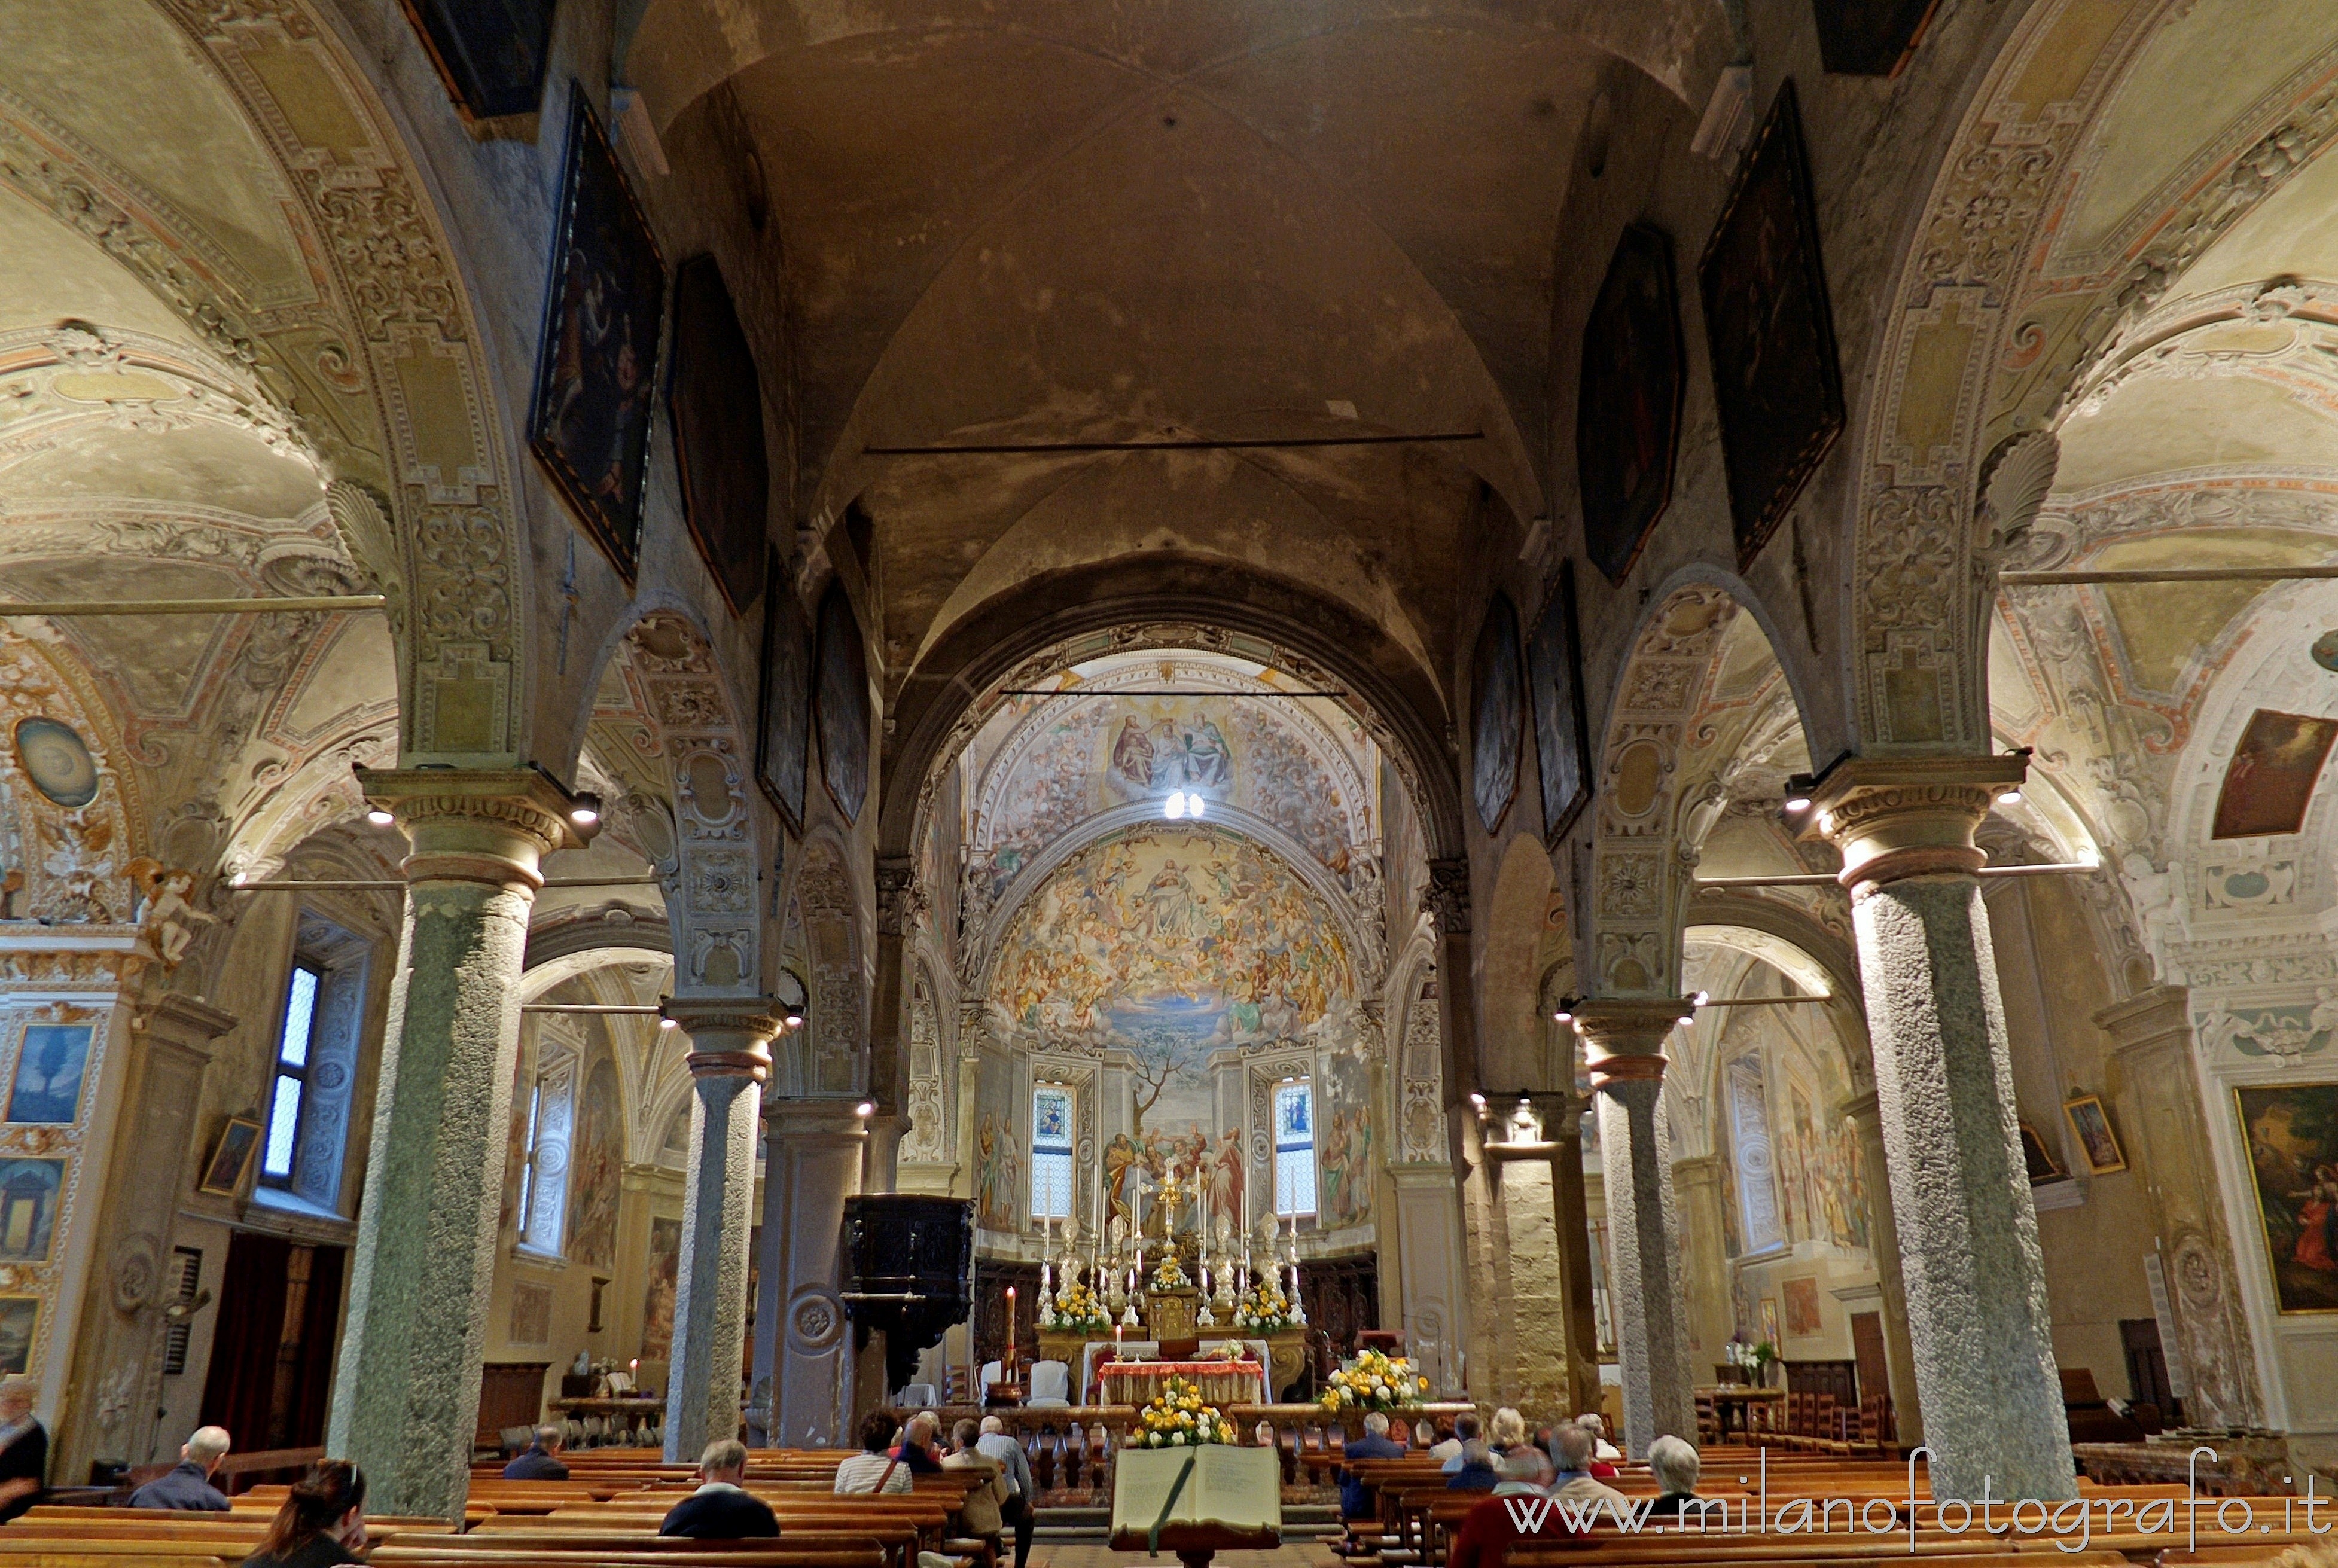 Pallanza frazione di Verbano-Cusio-Ossola (Verbano-Cusio-Ossola, Italy): Interior of the Church of the Madonna di Campagna - Pallanza frazione di Verbano-Cusio-Ossola (Verbano-Cusio-Ossola, Italy)